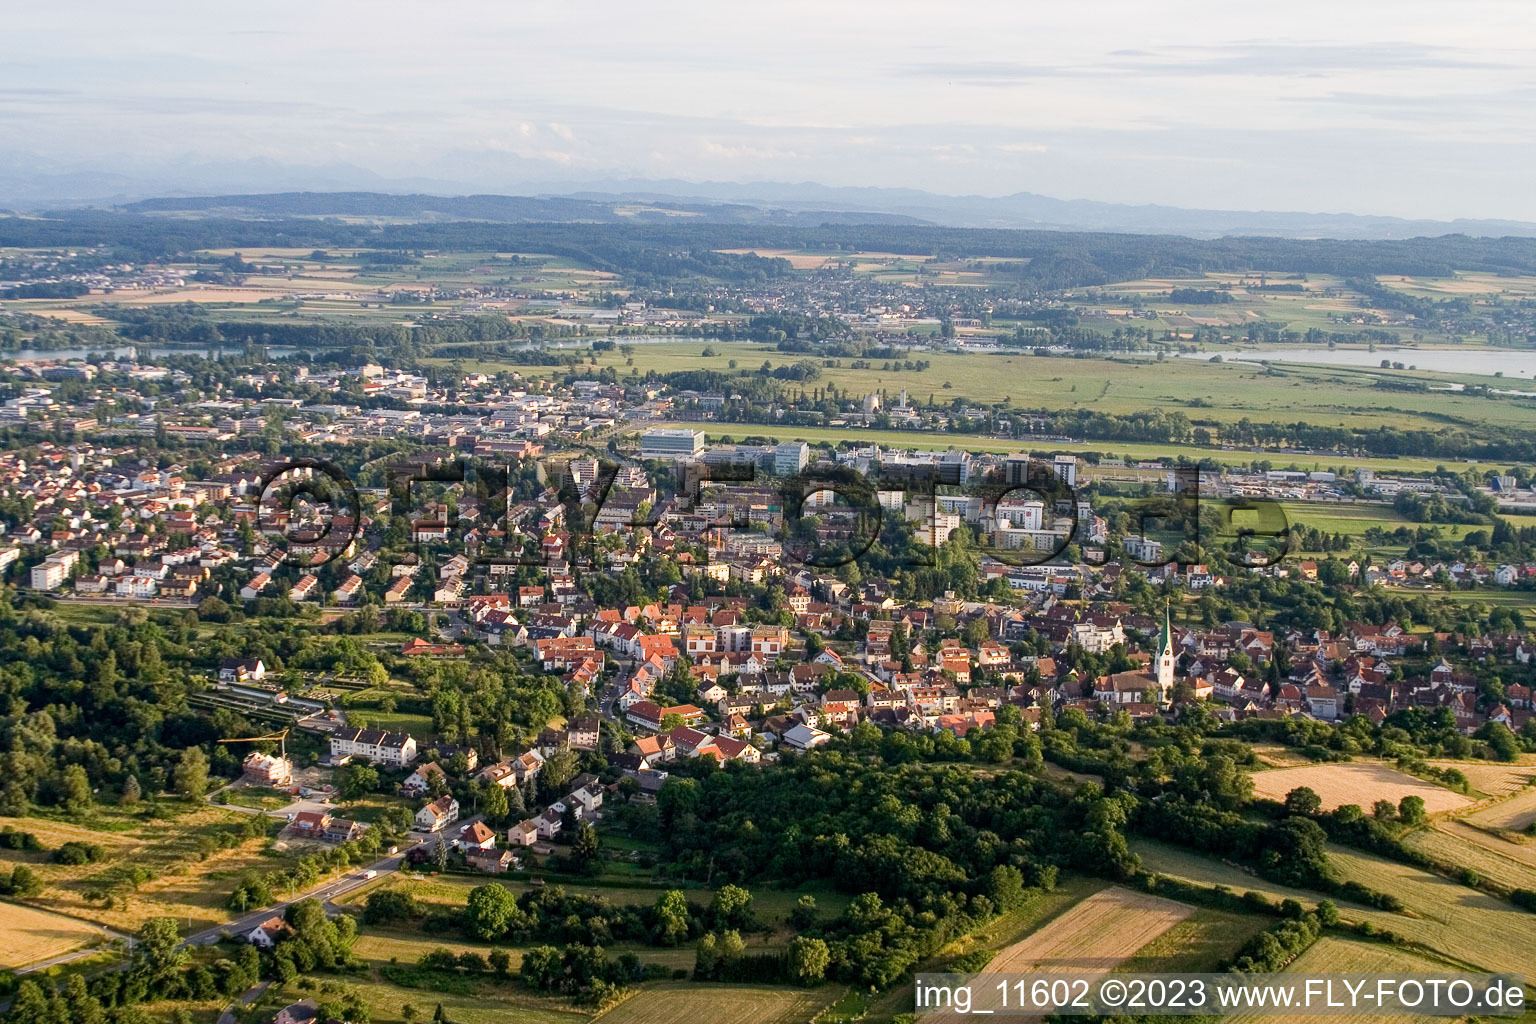 Luftbild von Ortsteil Wollmatingen in Konstanz im Bundesland Baden-Württemberg, Deutschland